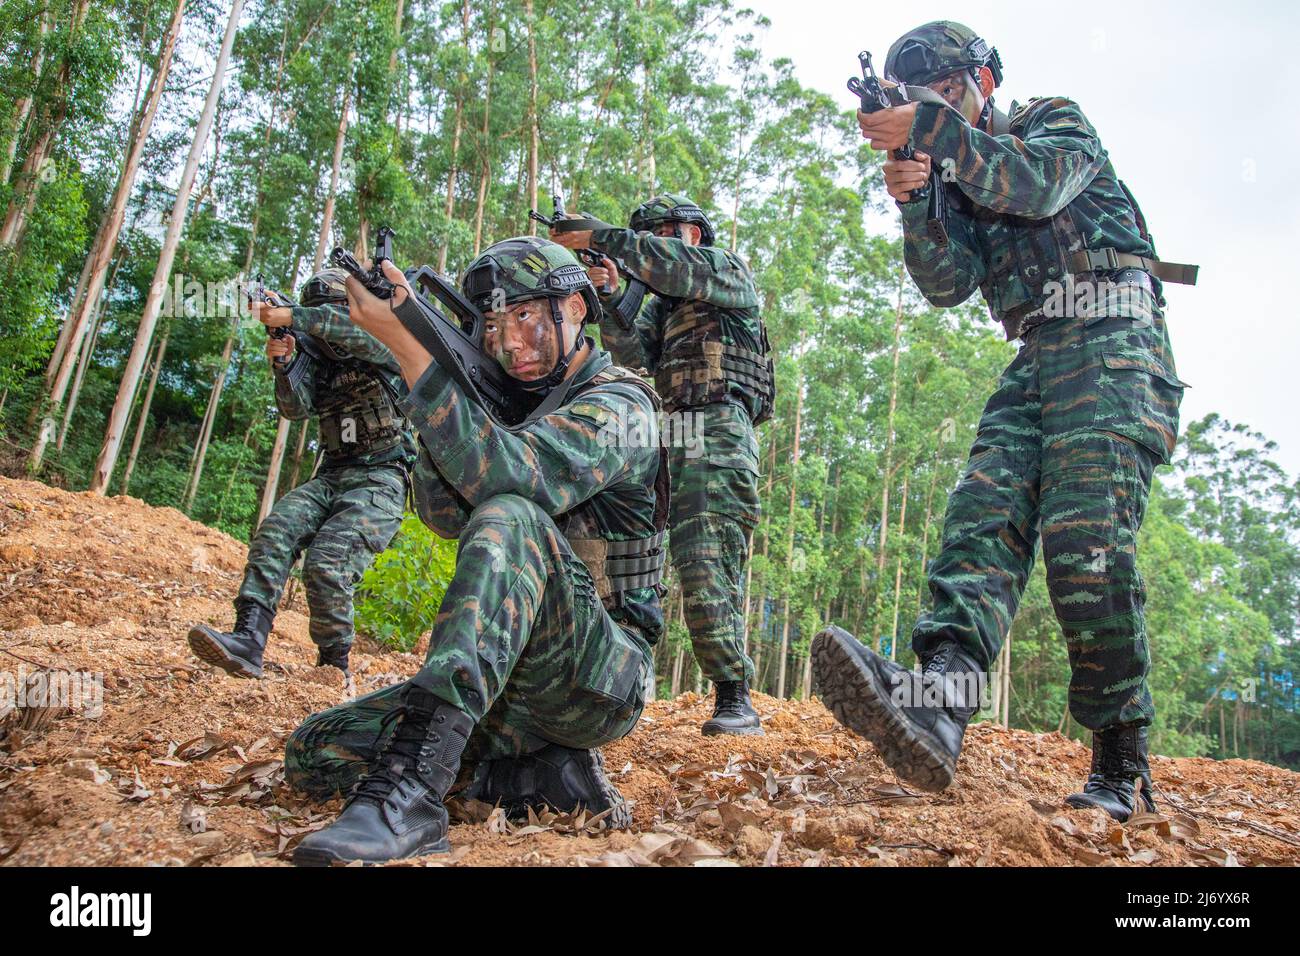 NANNING, CHINA - 5. MAI 2022 - Soldaten der Spezialeinheiten trainieren während einer echten Kampfübung in Nanning, dem autonomen Regi Guangxi Zhuang in Südchina Stockfoto